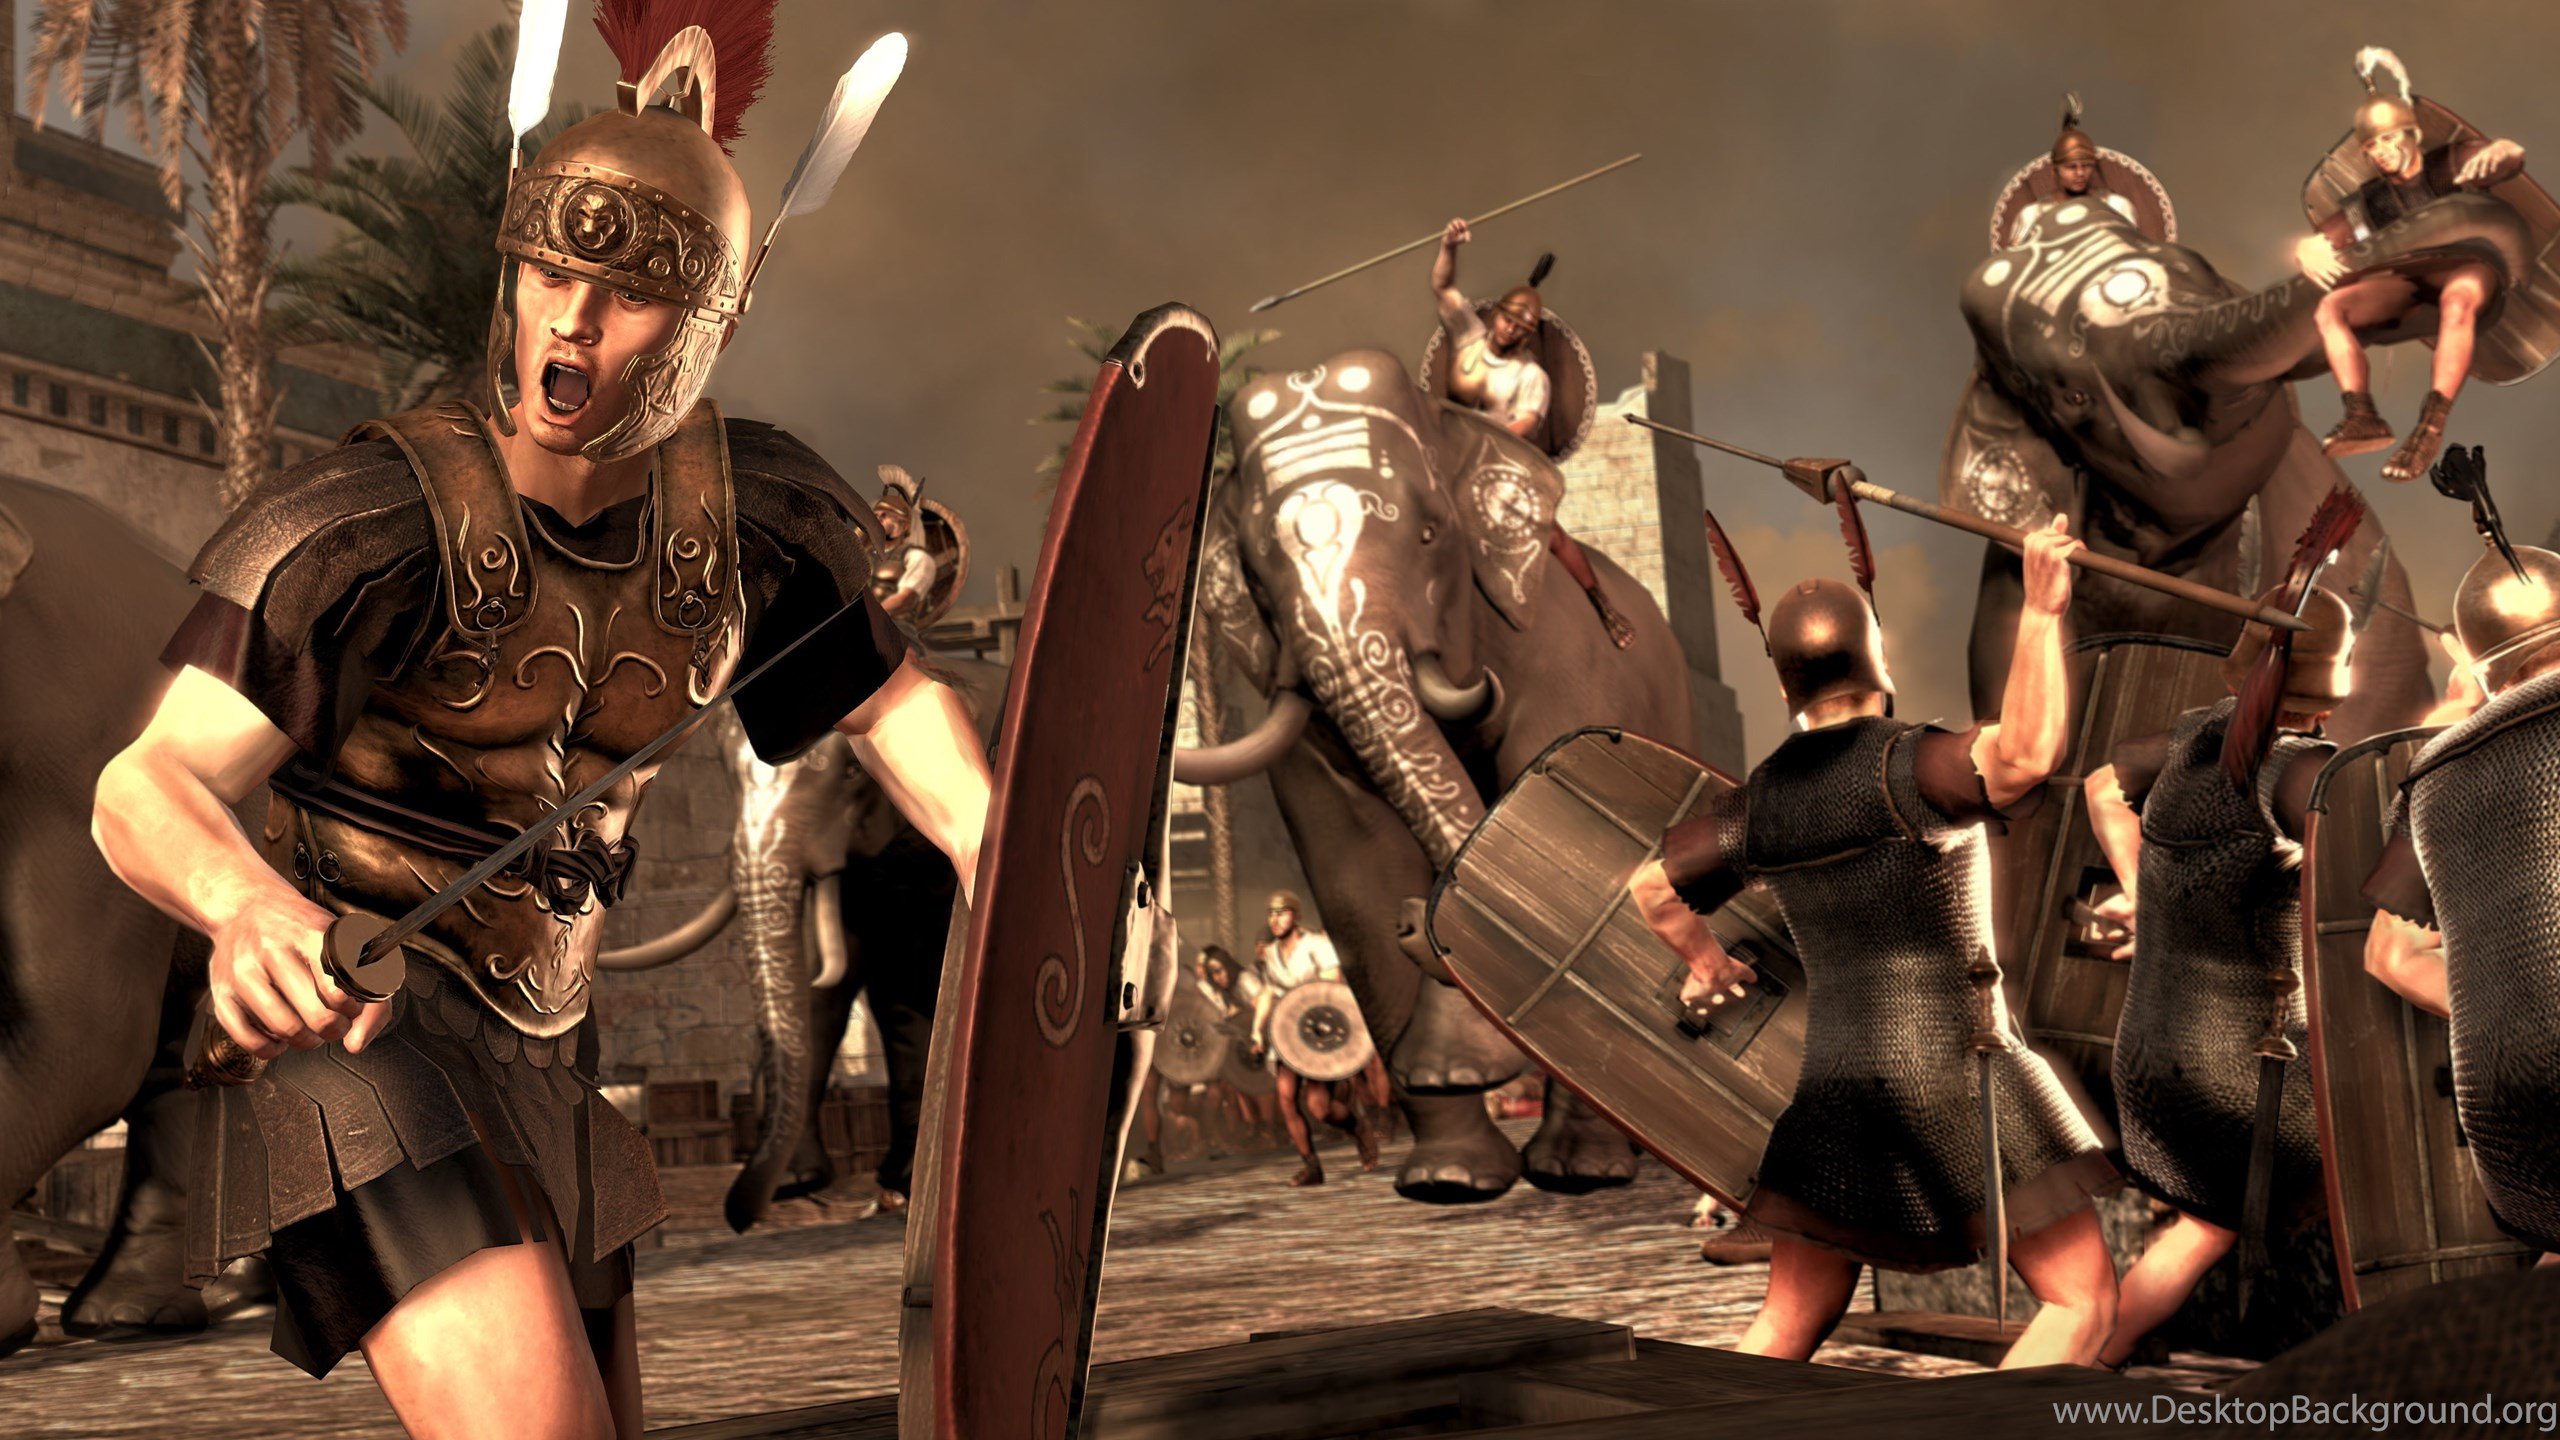 Total War: Rome II Computer Wallpaper, Desktop Background. Desktop Background